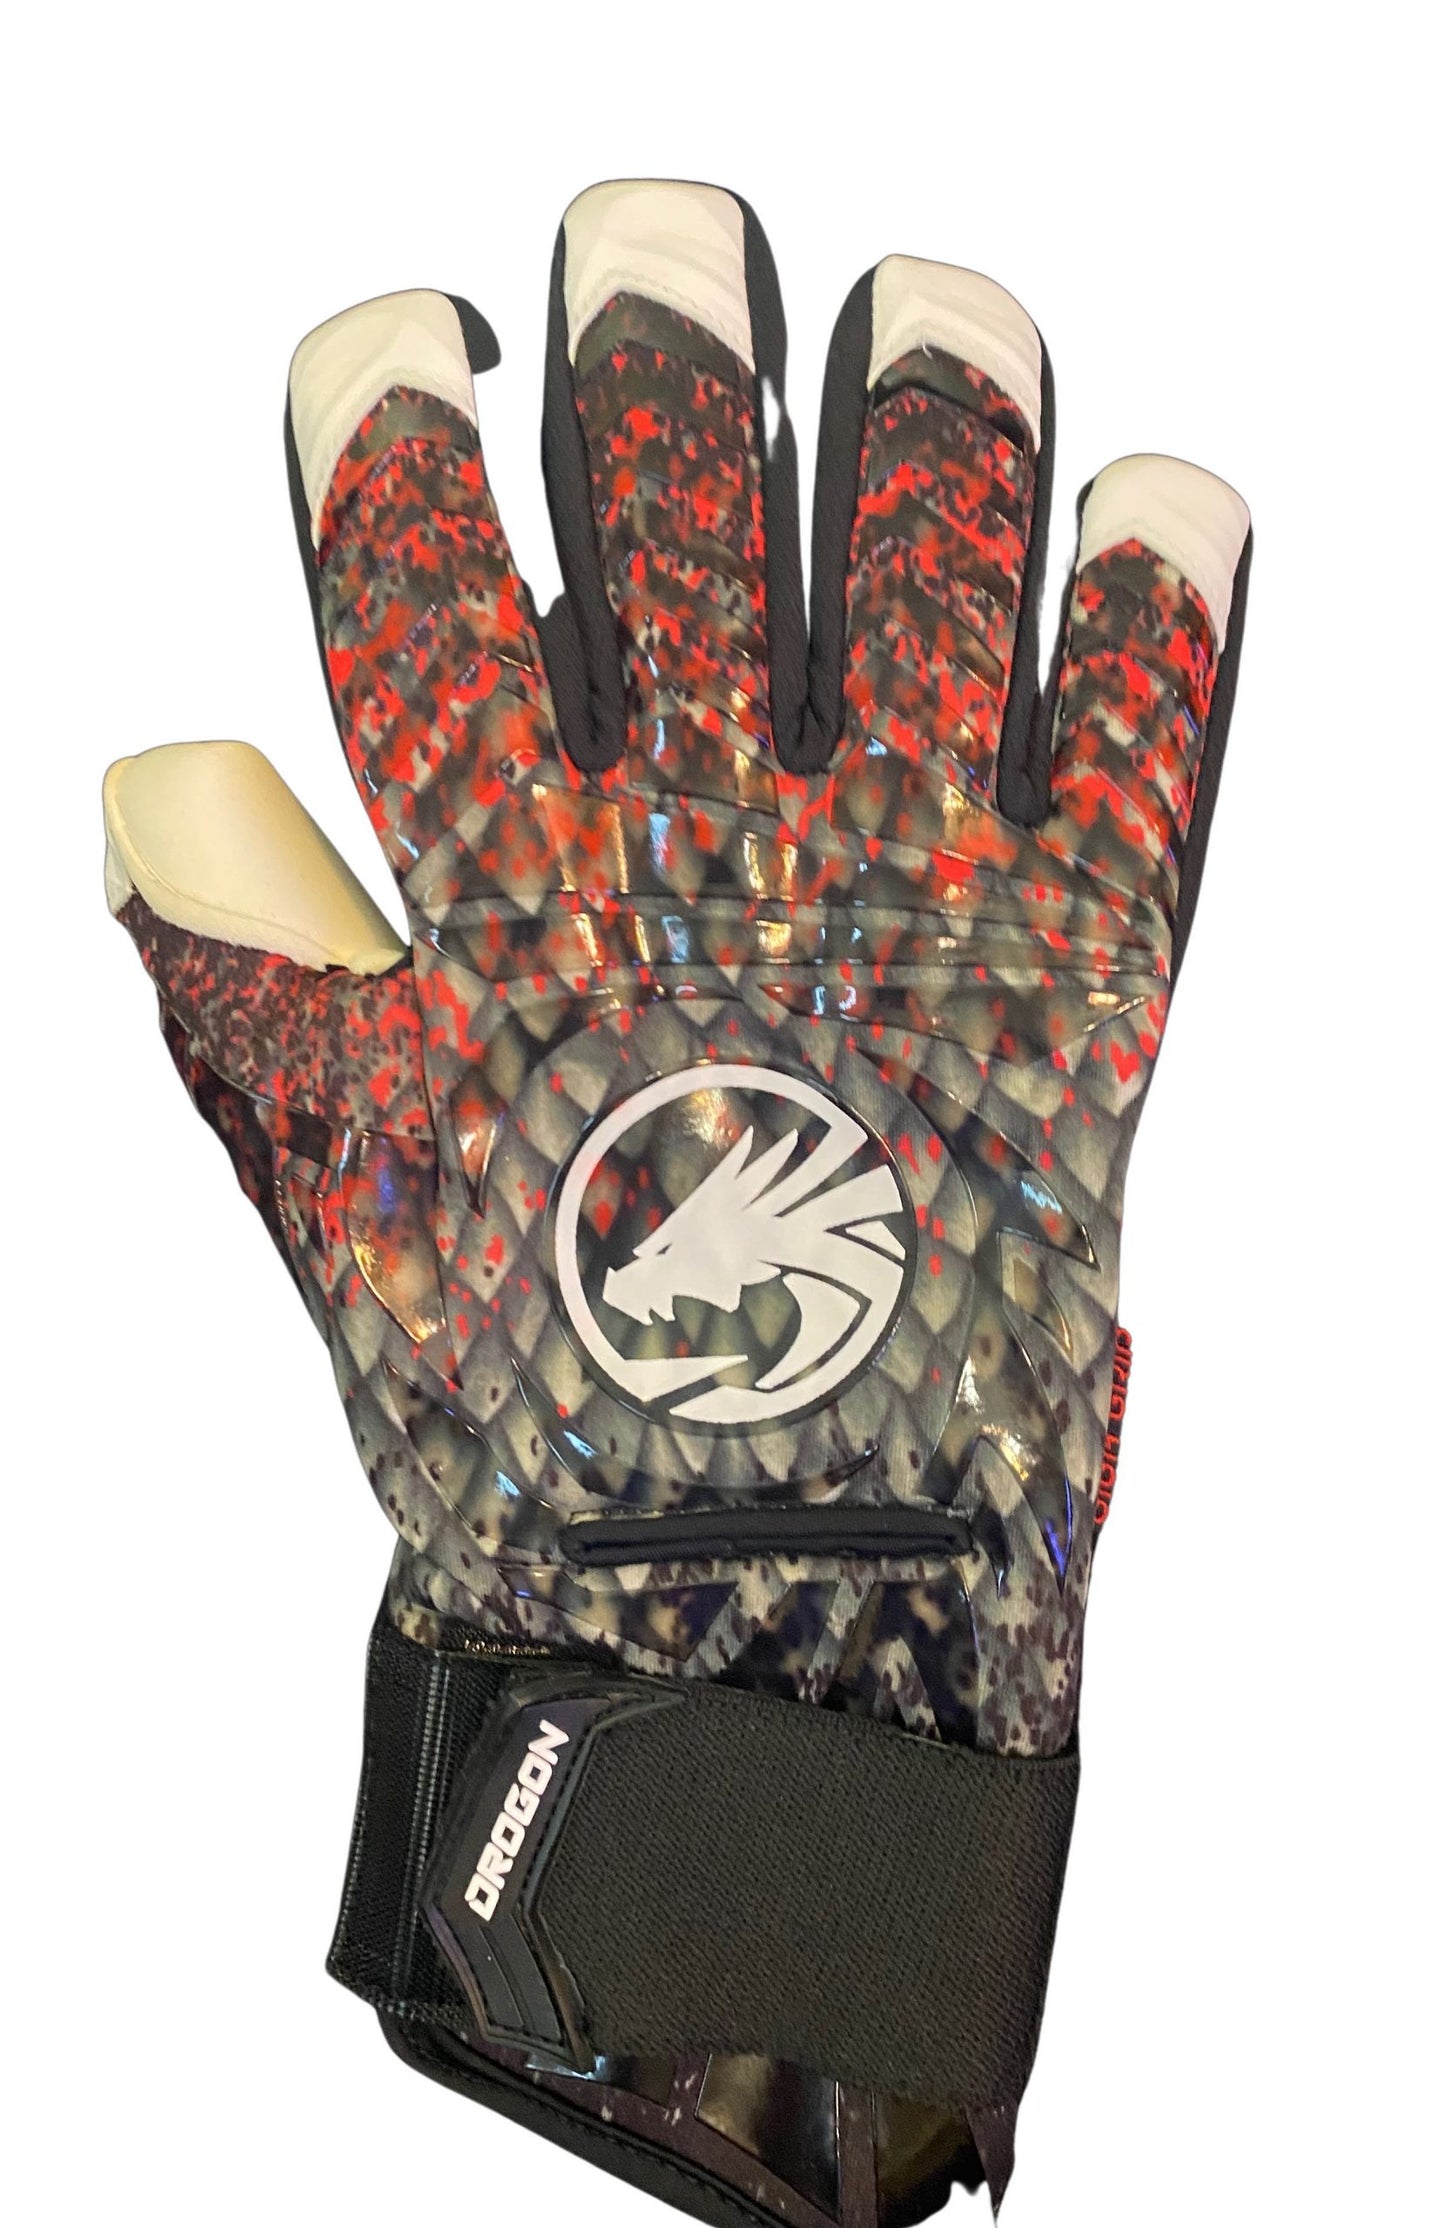 DragonGK, Drogon, Neoprene Goalkeeper Gloves